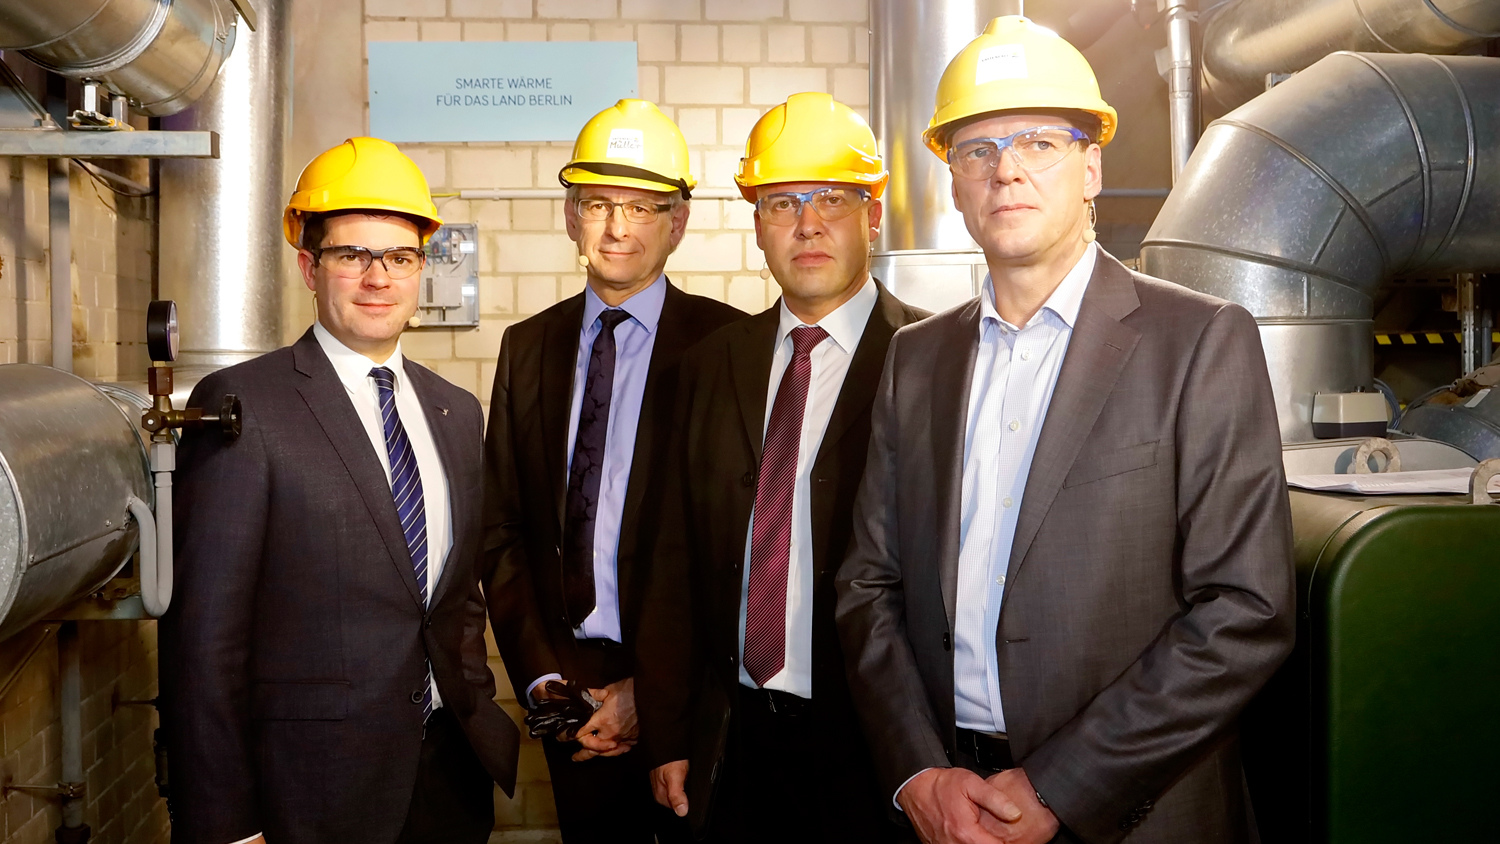 caption=Från vänster till höger: Björn Böhning (chef för Berlins senatskansli), Gunther Müller (Vattenfall Wärmes vd), Raul Fuchs (marknads- och försäljningschef vid Samson), Alf Geßner (Vattenfall District Heating Network Manager).